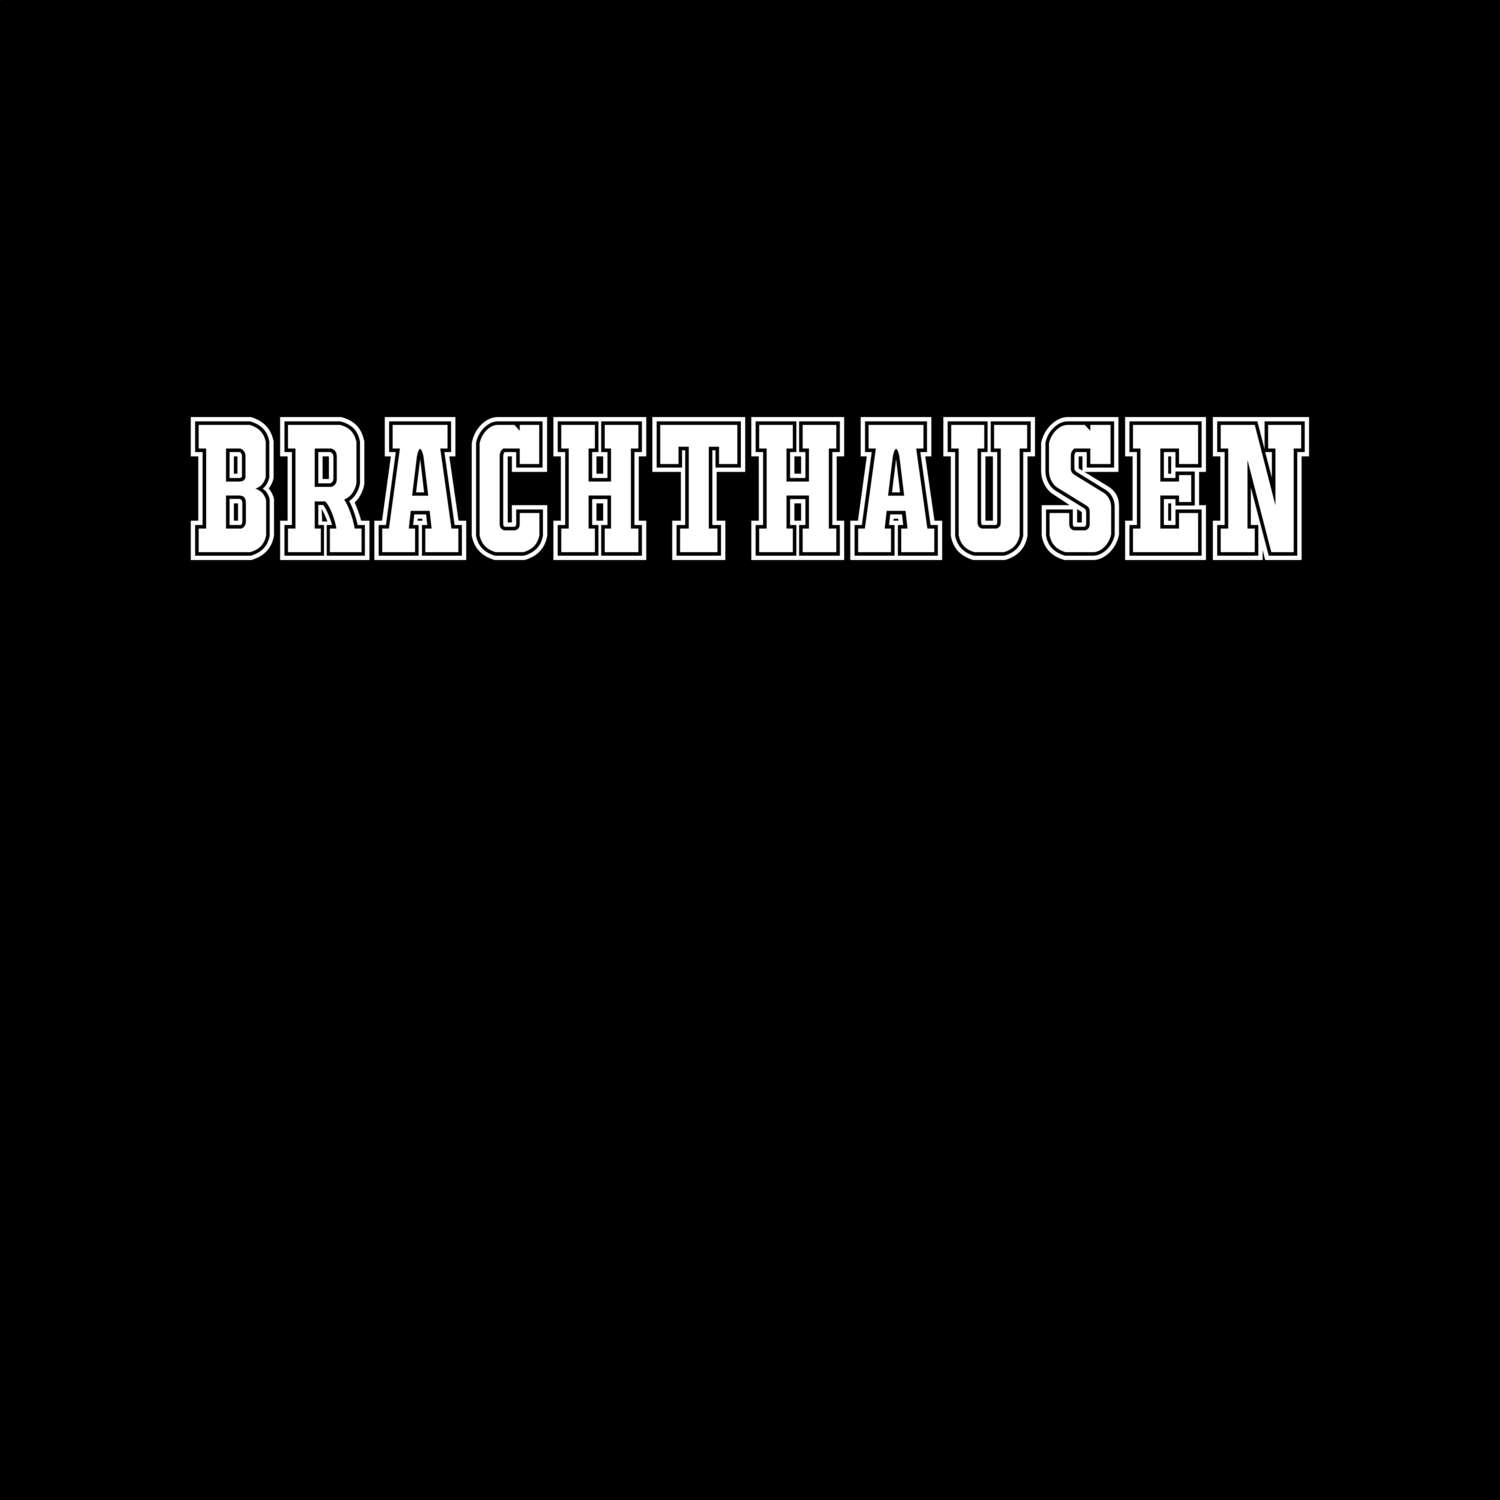 Brachthausen T-Shirt »Classic«